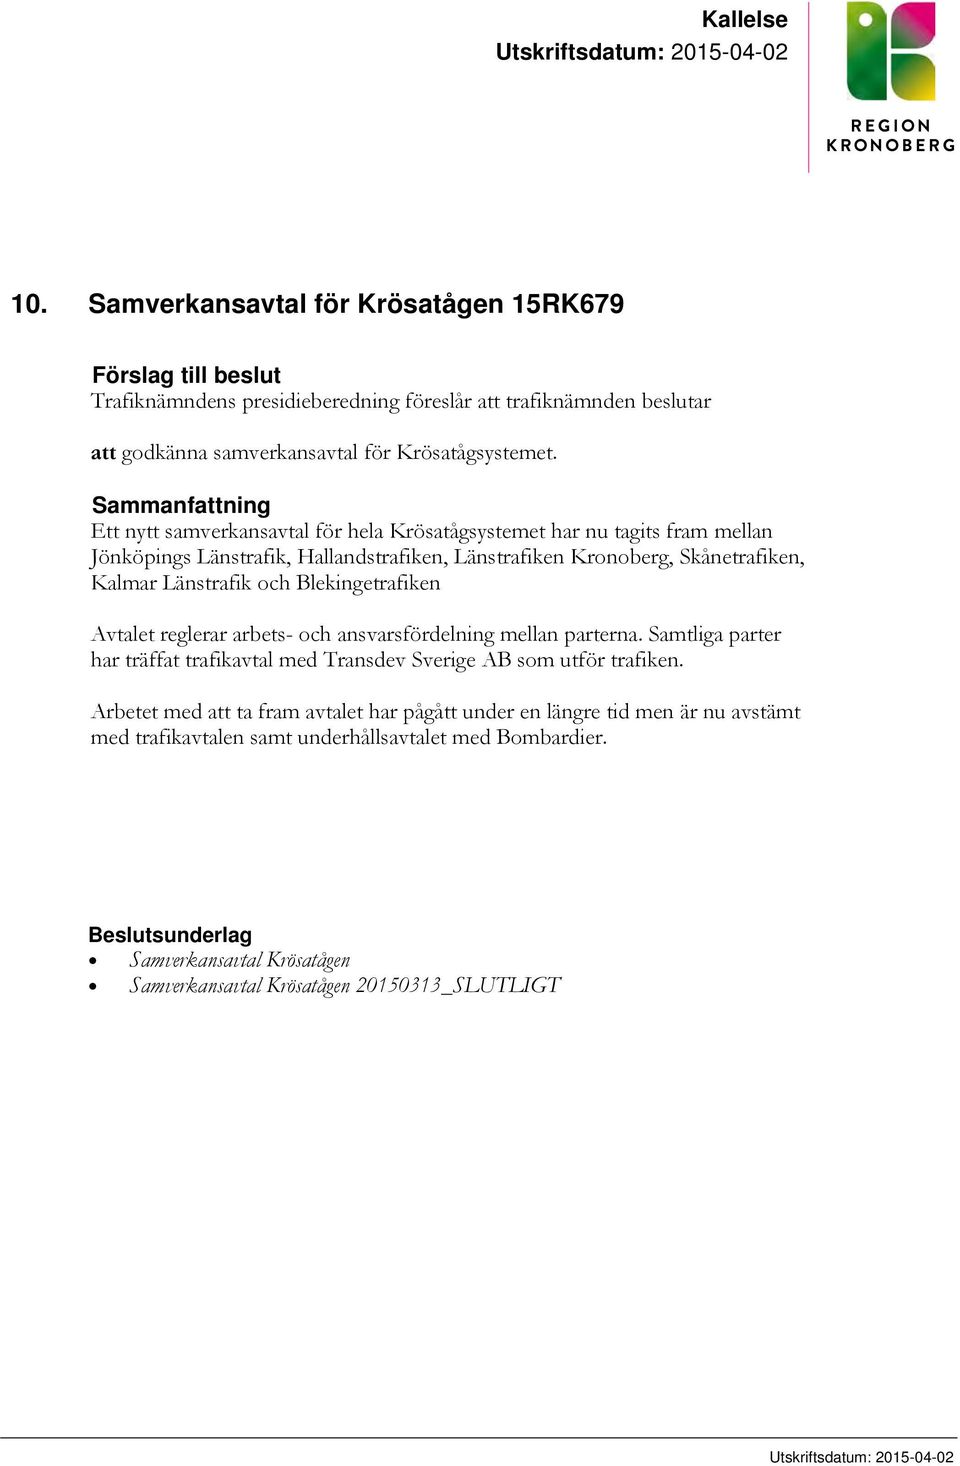 Sammanfattning Ett nytt samverkansavtal för hela Krösatågsystemet har nu tagits fram mellan Jönköpings Länstrafik, Hallandstrafiken, Länstrafiken Kronoberg, Skånetrafiken, Kalmar Länstrafik och